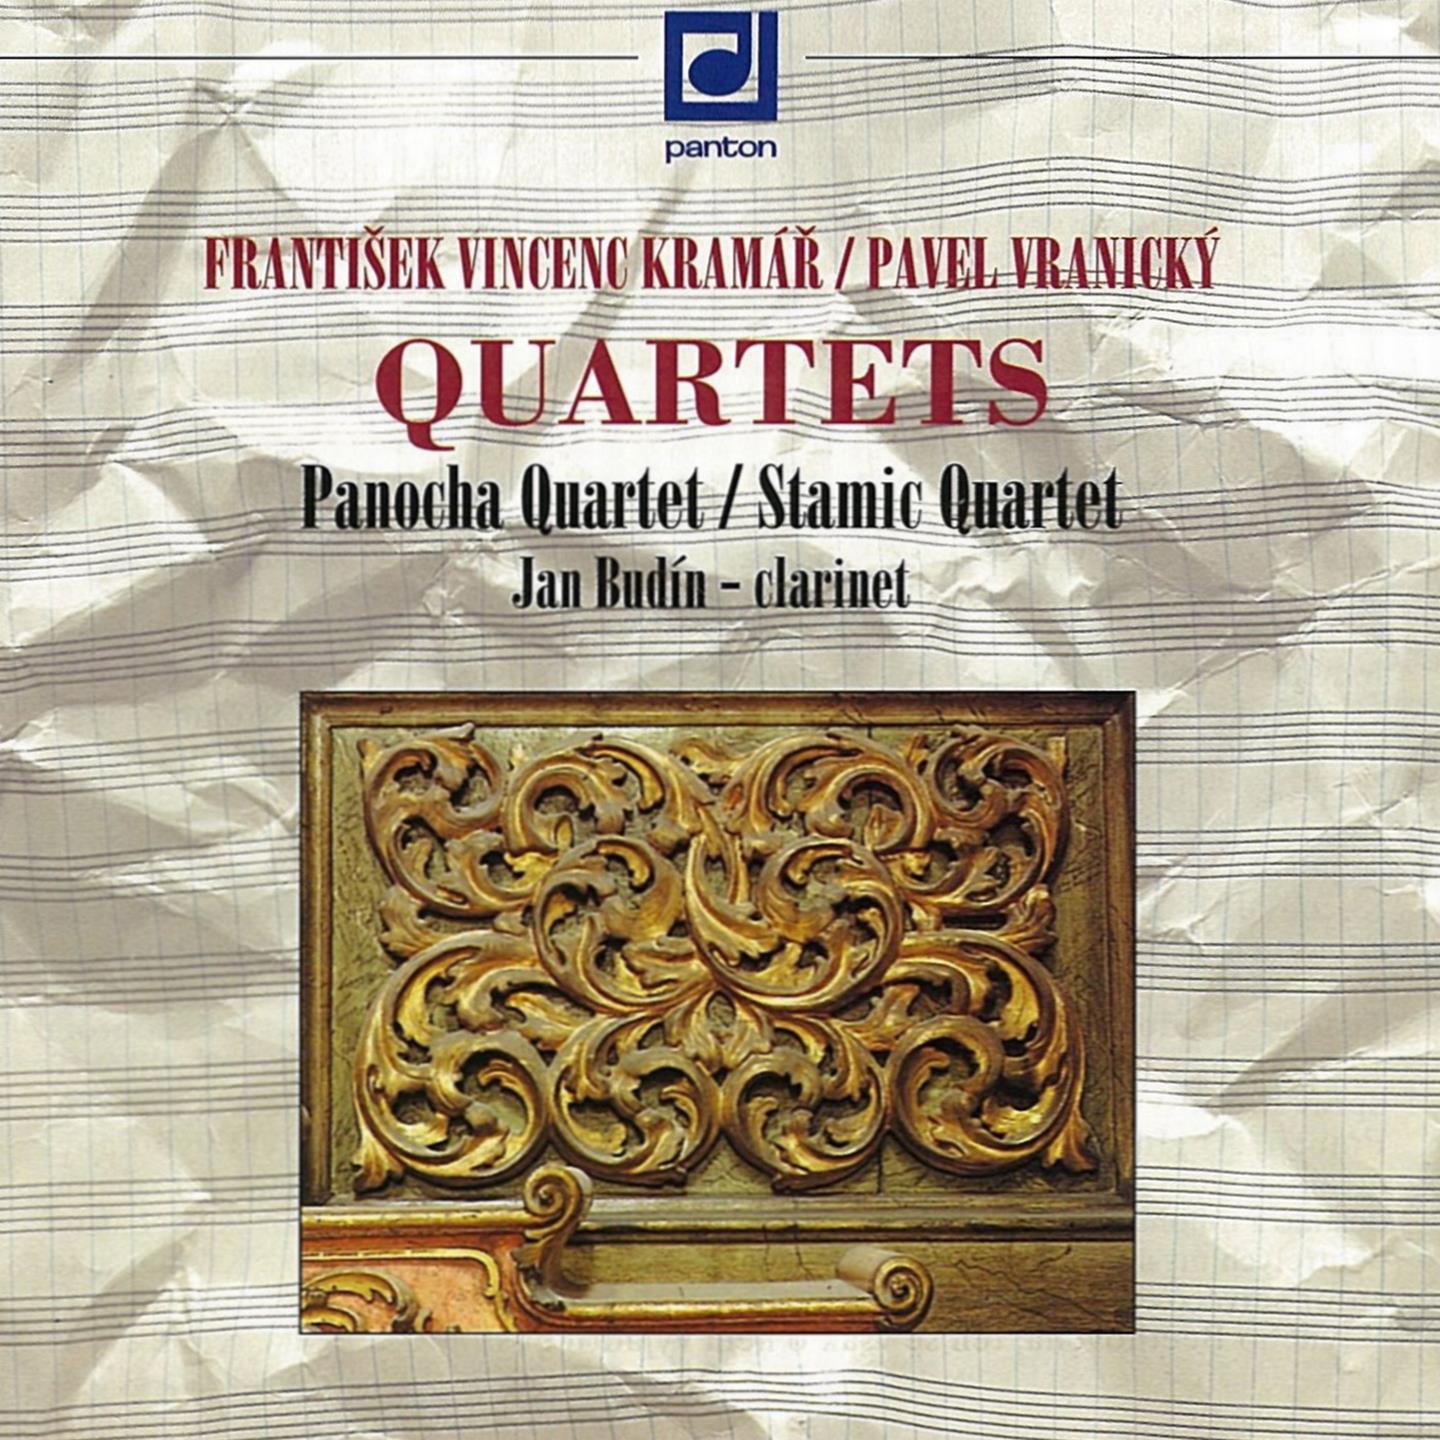 String Quartets, Op. 16, No. 6 in D Minor, Op. 16: I. Allegro vivace